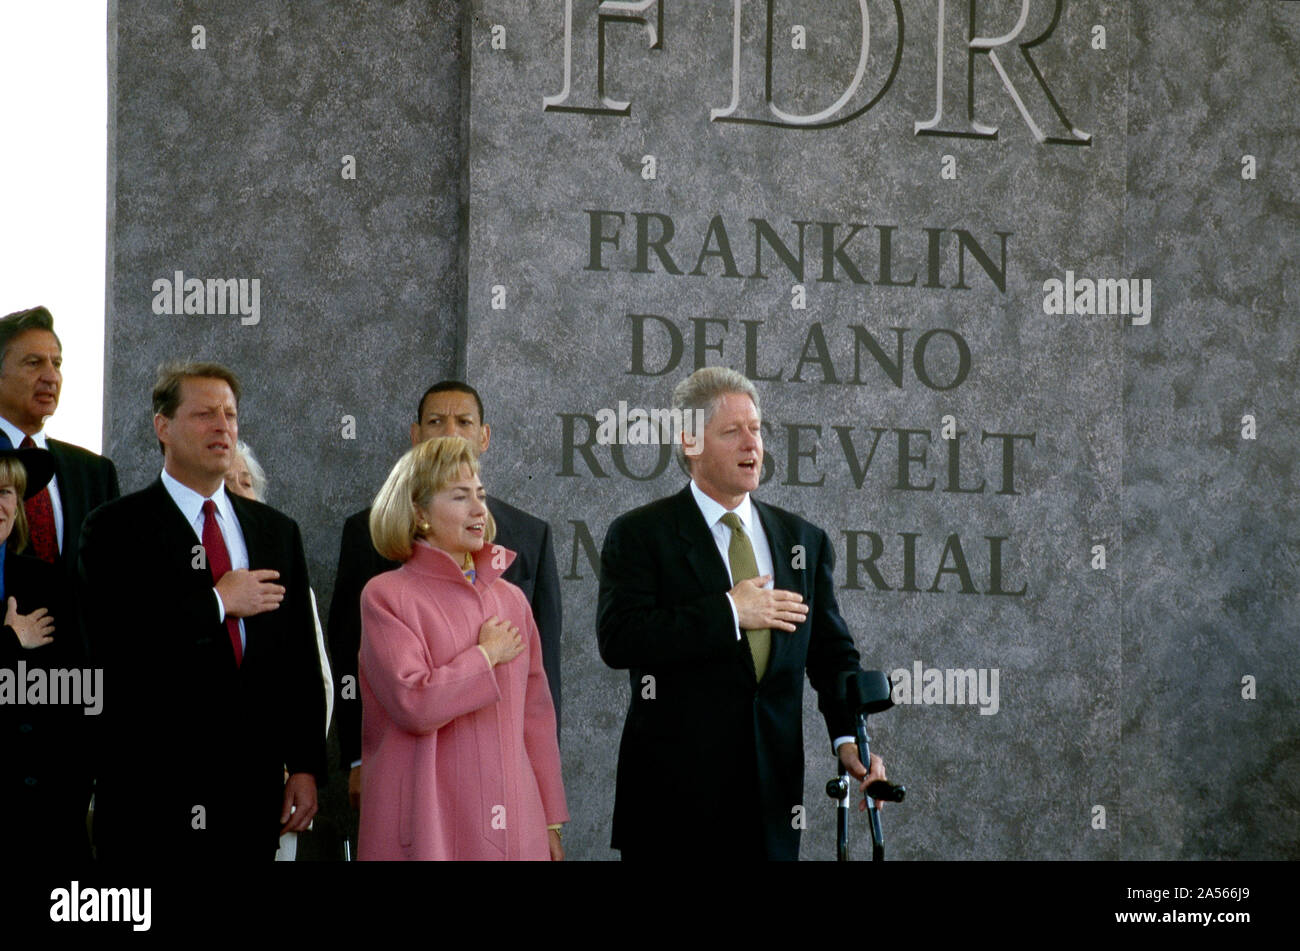 El Vicepresidente Al Gore, la Primera Dama, Hillary Clinton, y el Presidente Bill Clinton en 1997 en la dedicación de la Franklin Delano Roosevelt Memorial en Washington, D.C., la esposa del vicepresidente de la república, volquete, se oscurece parcialmente a la izquierda Foto de stock